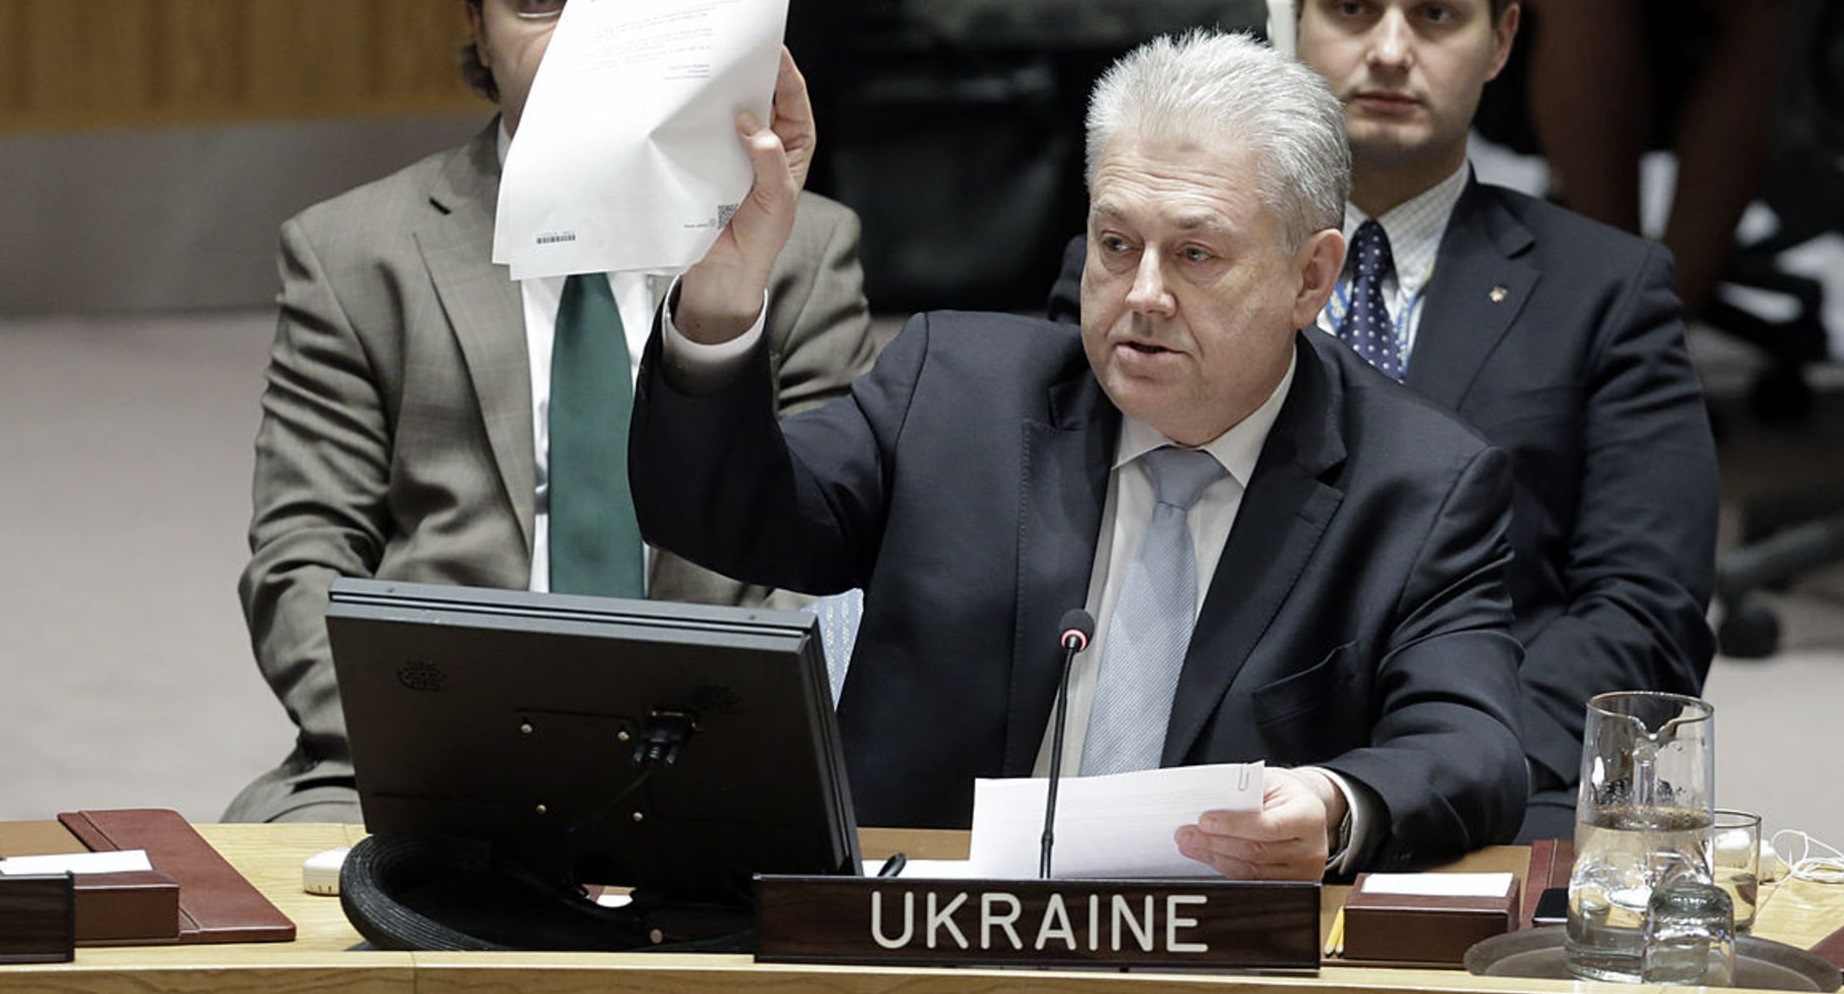 Глава СММ не согласился со словами Ельченко о российских военных на Донбассе